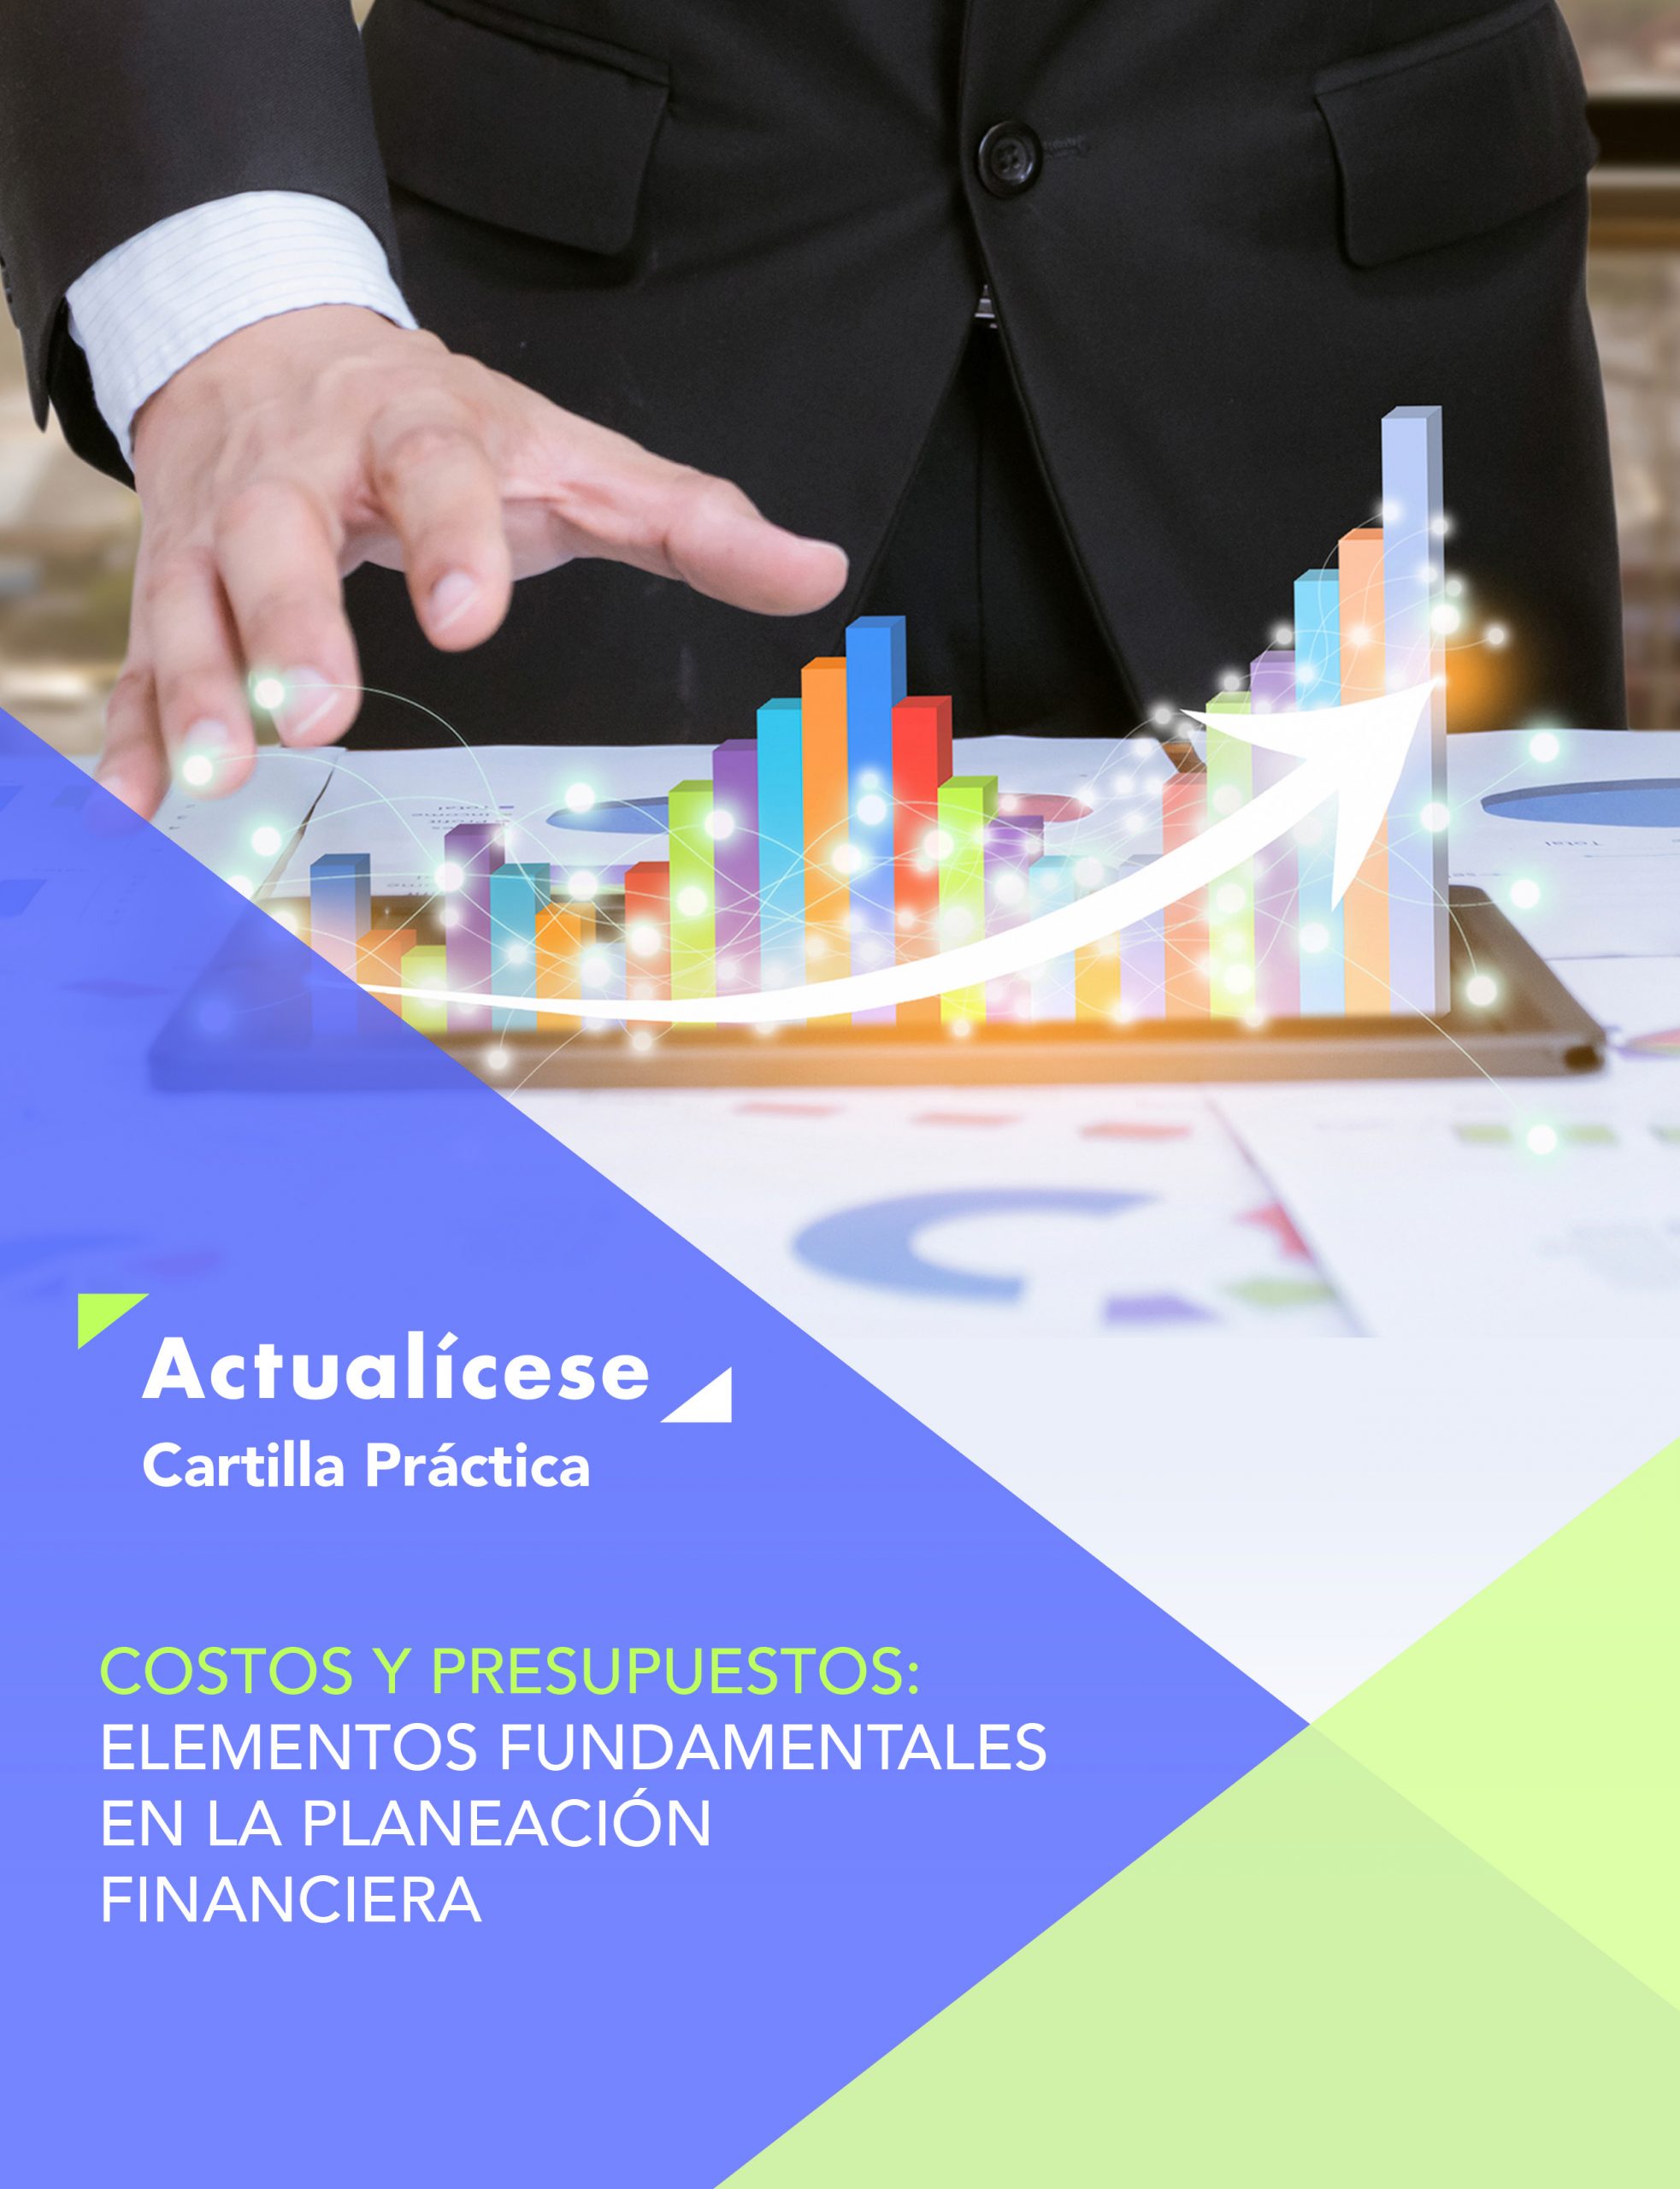 Cartilla Práctica: Costos y presupuestos: elementos fundamentales en la planeación financiera